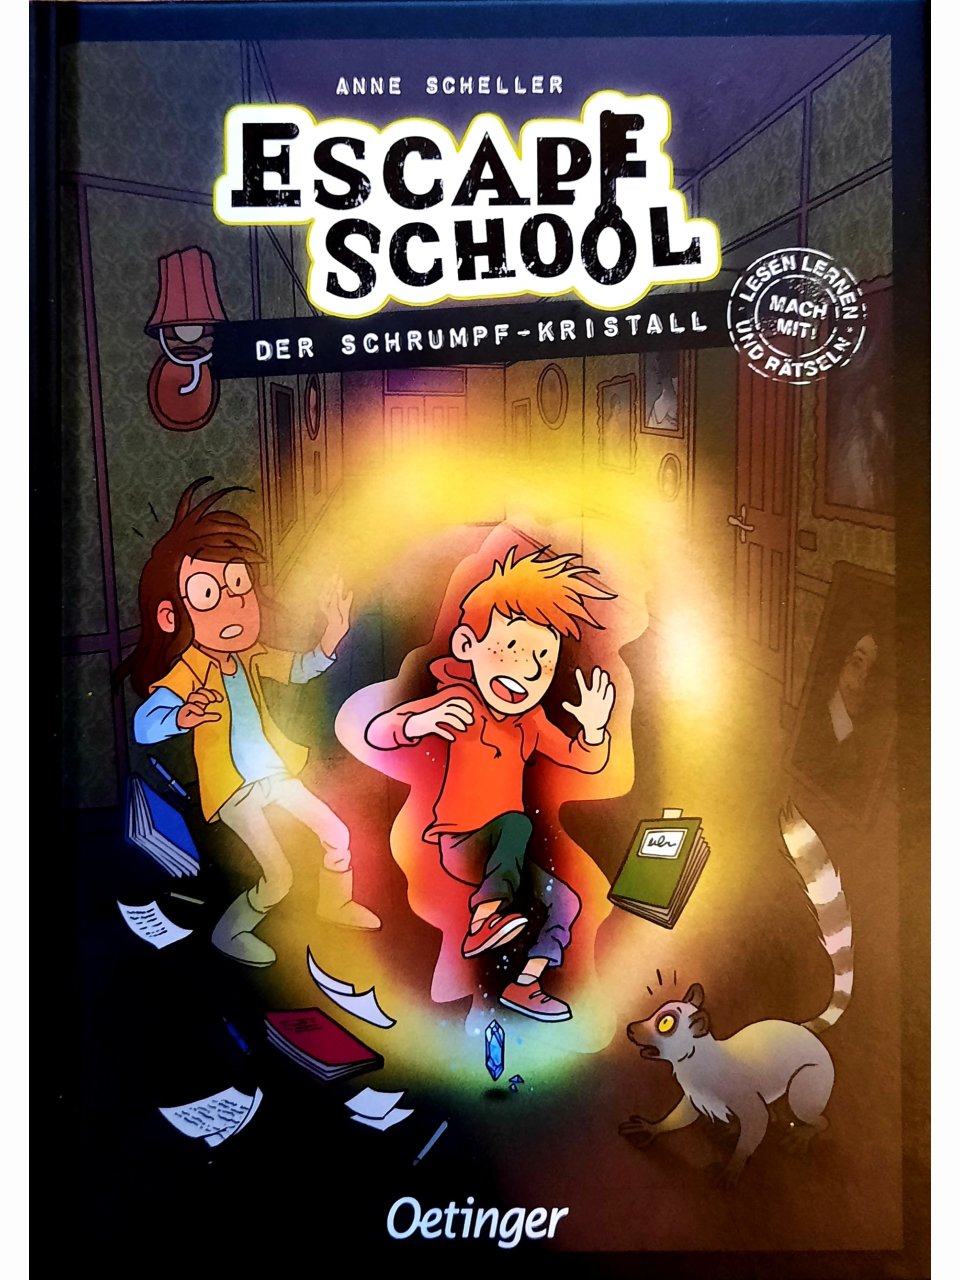 Escape School - Der Schrumpf-Kristall